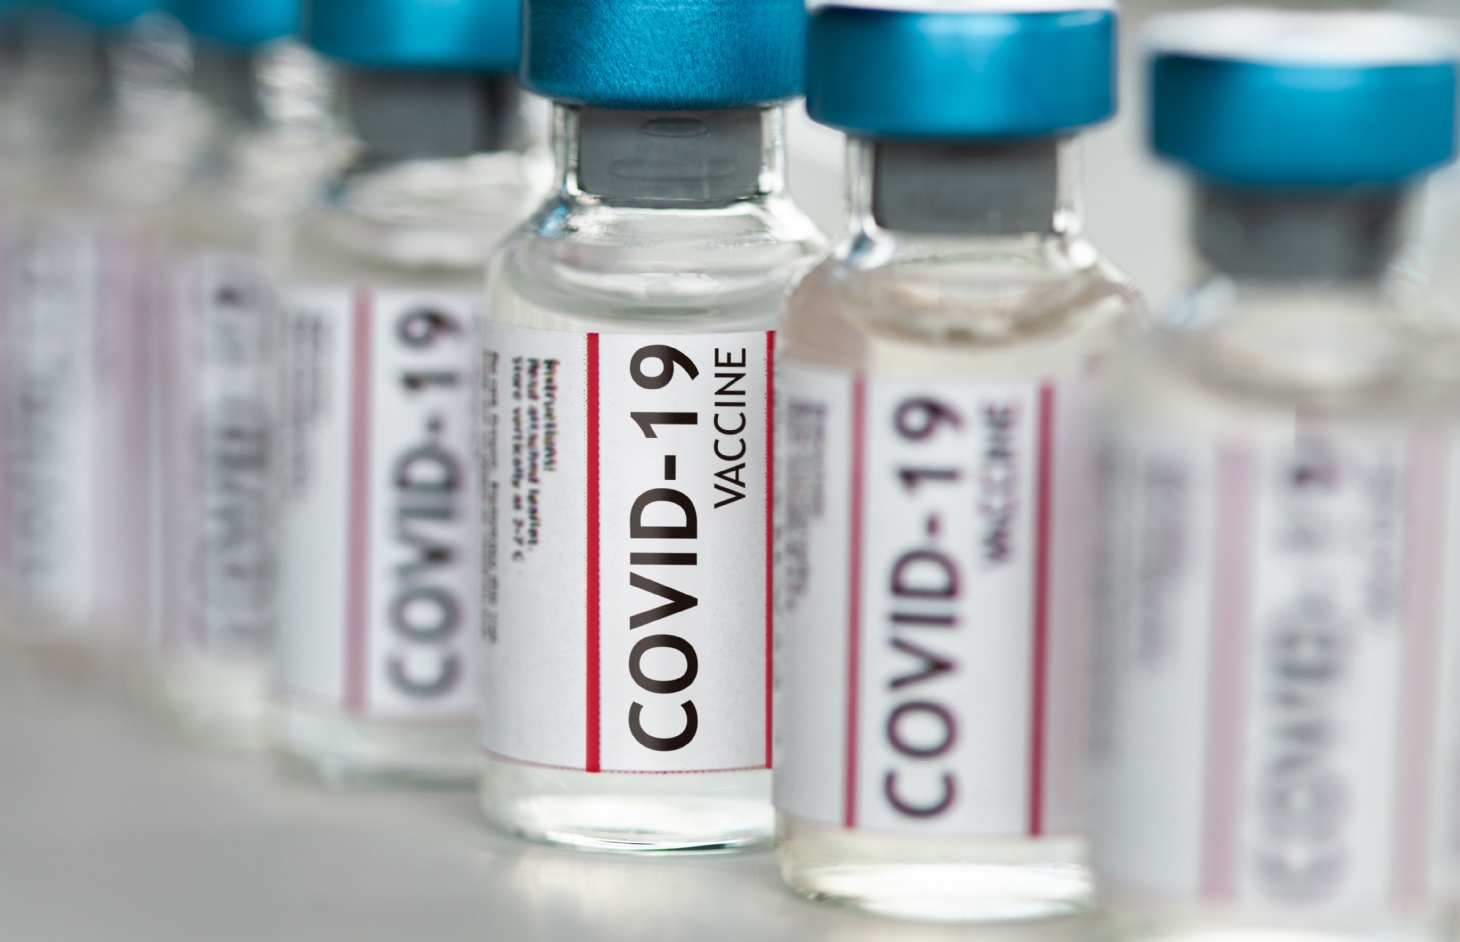 Ministério da Saúde começa a distribuir 1 milhão de vacinas da Pfizer | Jornal da Orla